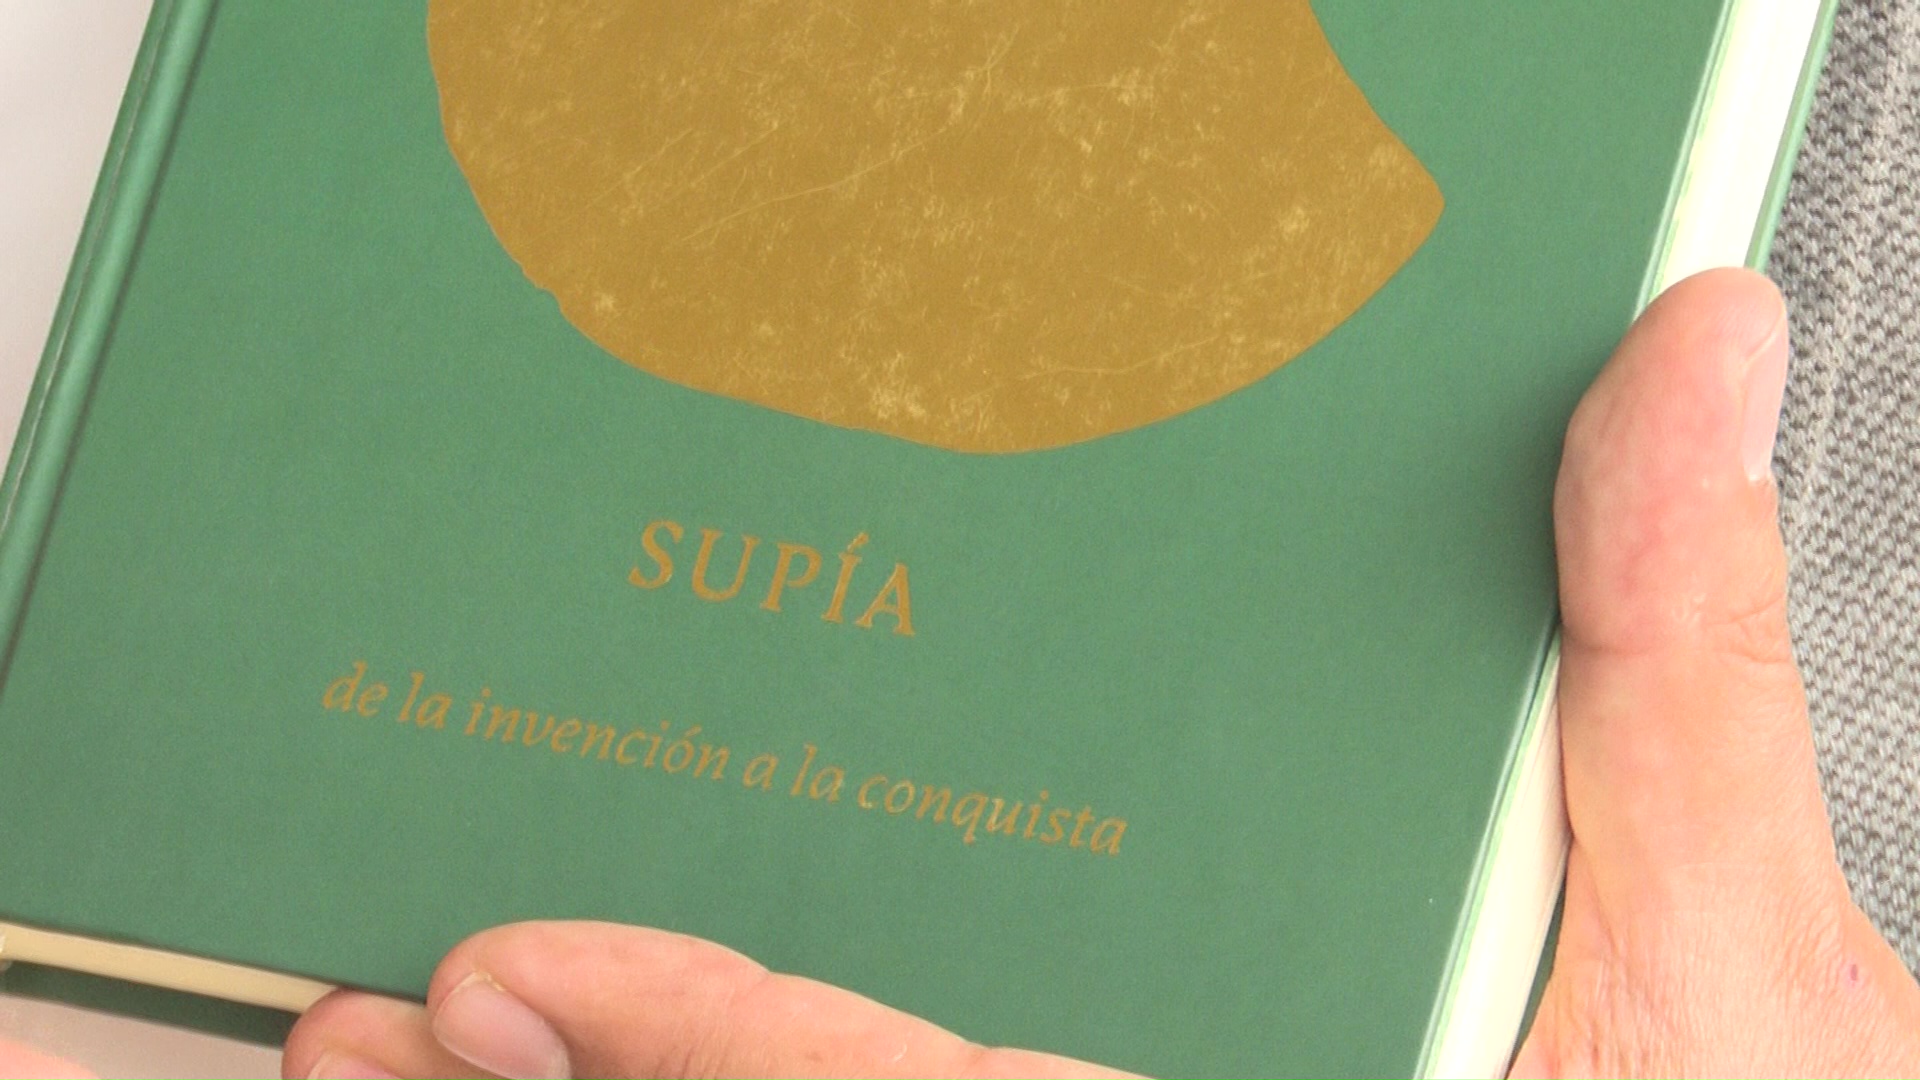 'Supía, de la invención a la conquista' libro